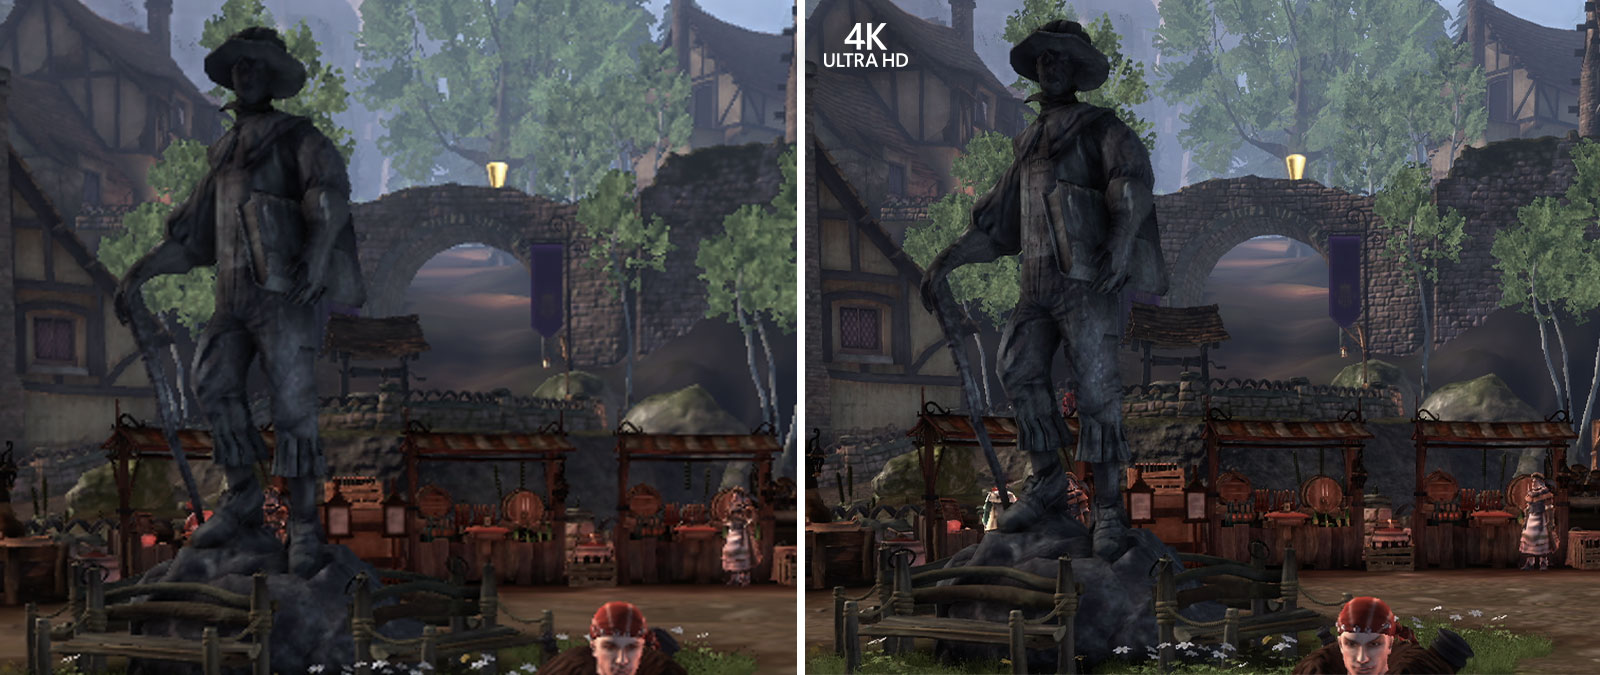 4K Ultra HD, Sammenligningsskjermbilde av Fable Anniversary zoomet inn for å vise detaljer i bakgrunnen